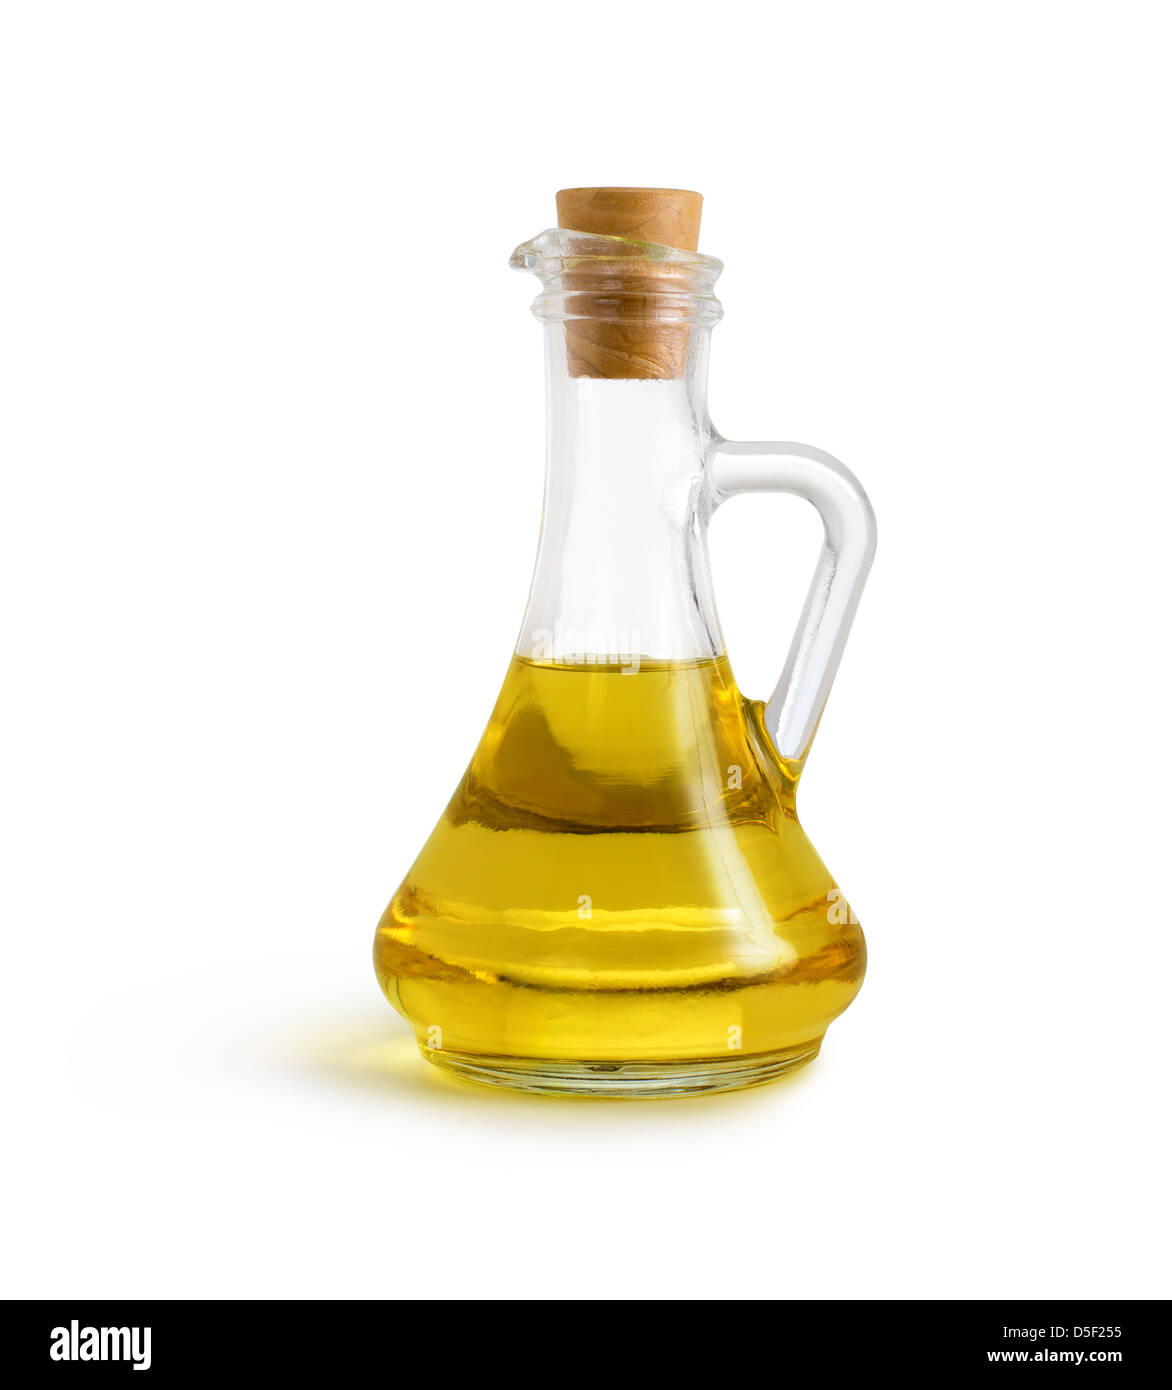 Di oliva Olio vegetale nella brocca di vetro isolato su bianco con percorso di clipping incluso Foto Stock